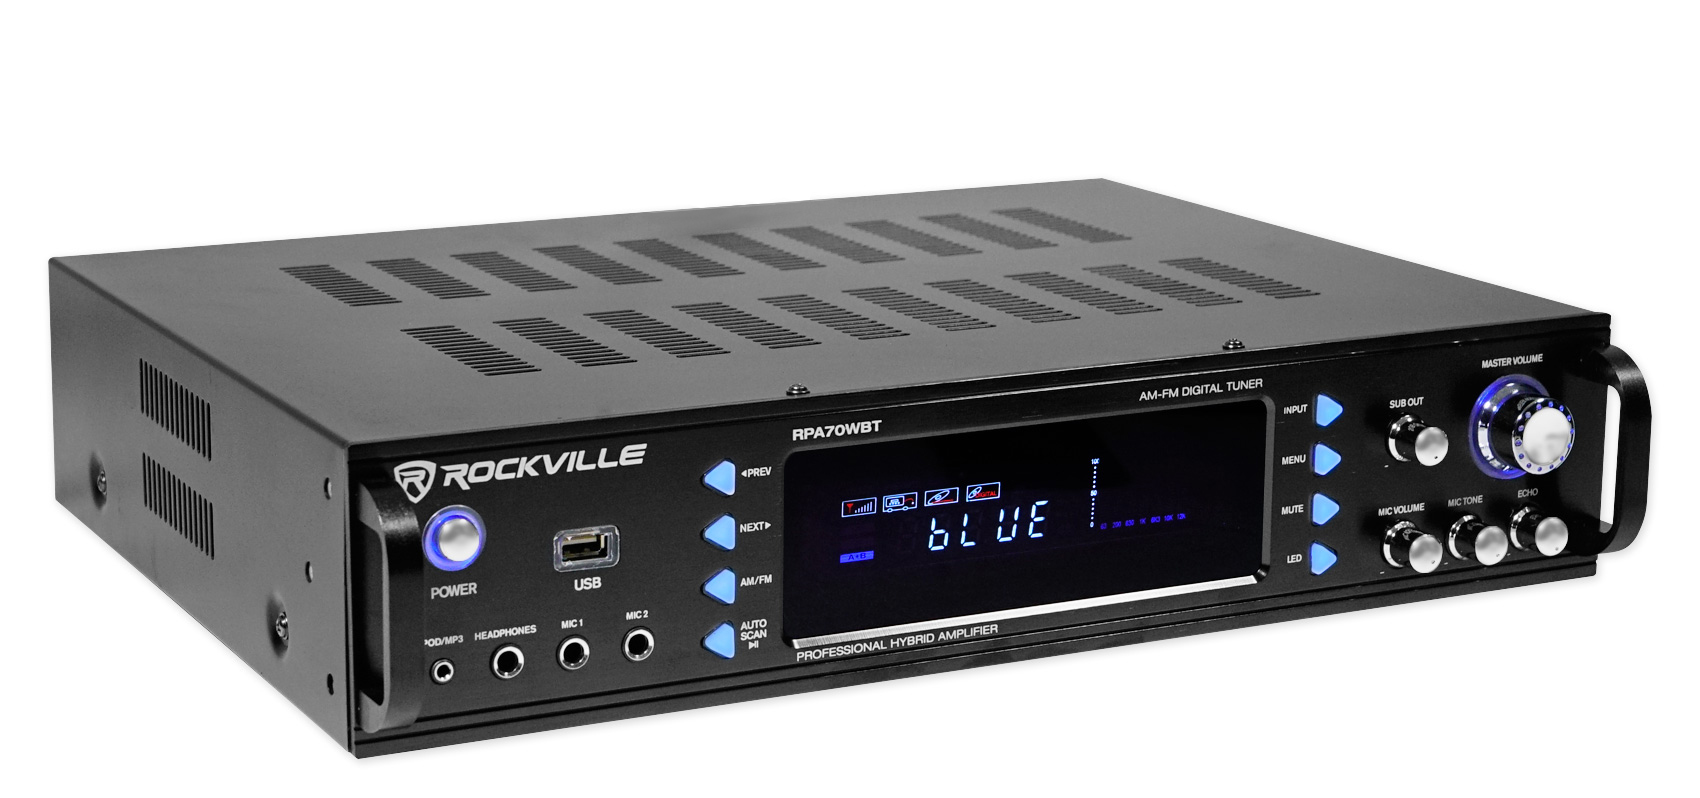 Rockville RPA70WBT 1000w 2-Ch USB Bluetooth Pro/Karaoke Amplifier